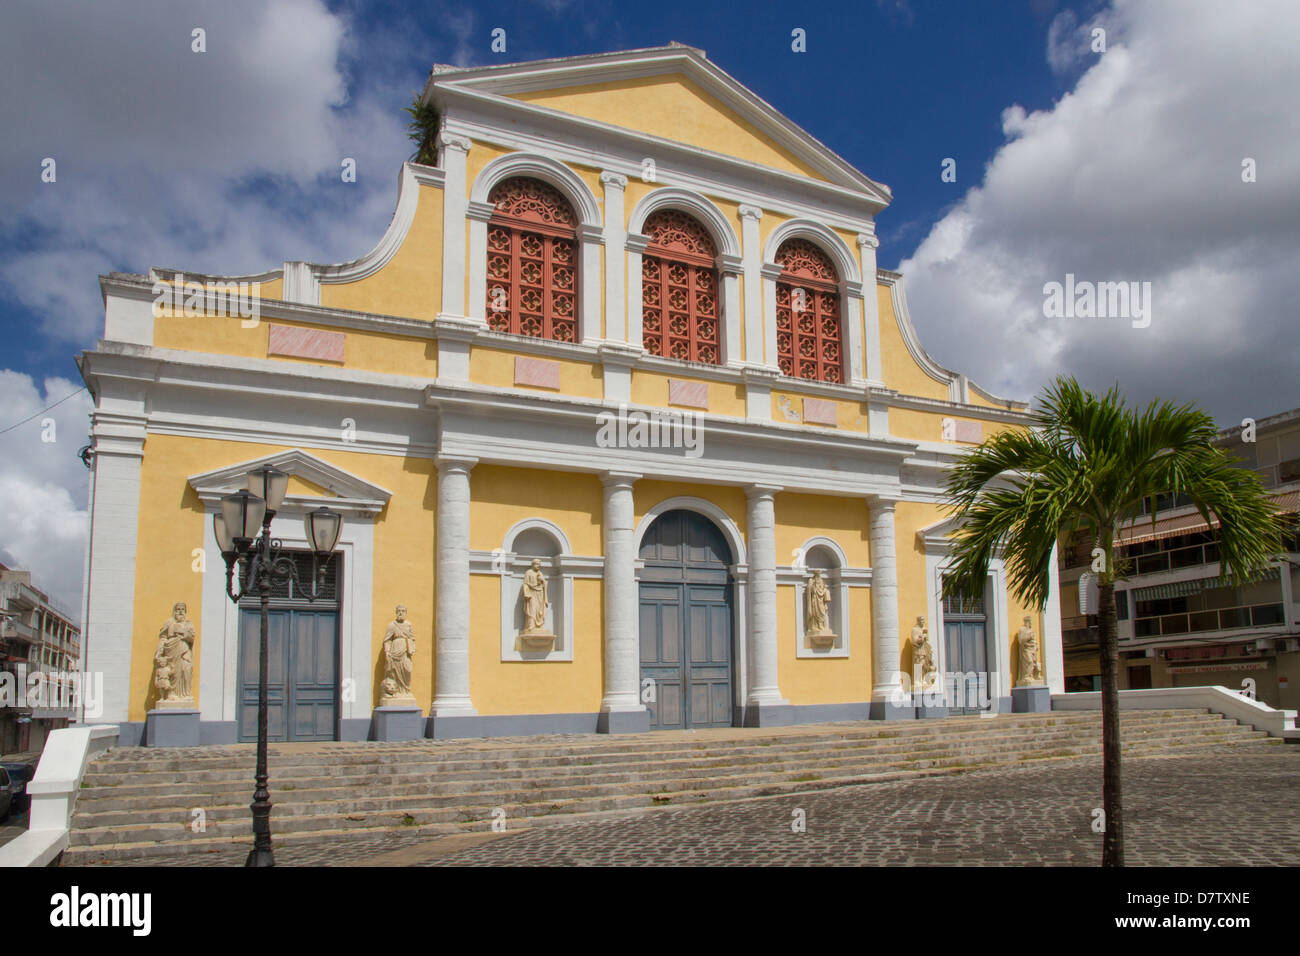 Cathédrale, Point-a-Pitre, Guadeloupe, Iles sous le vent, Antilles, Caraïbes Banque D'Images